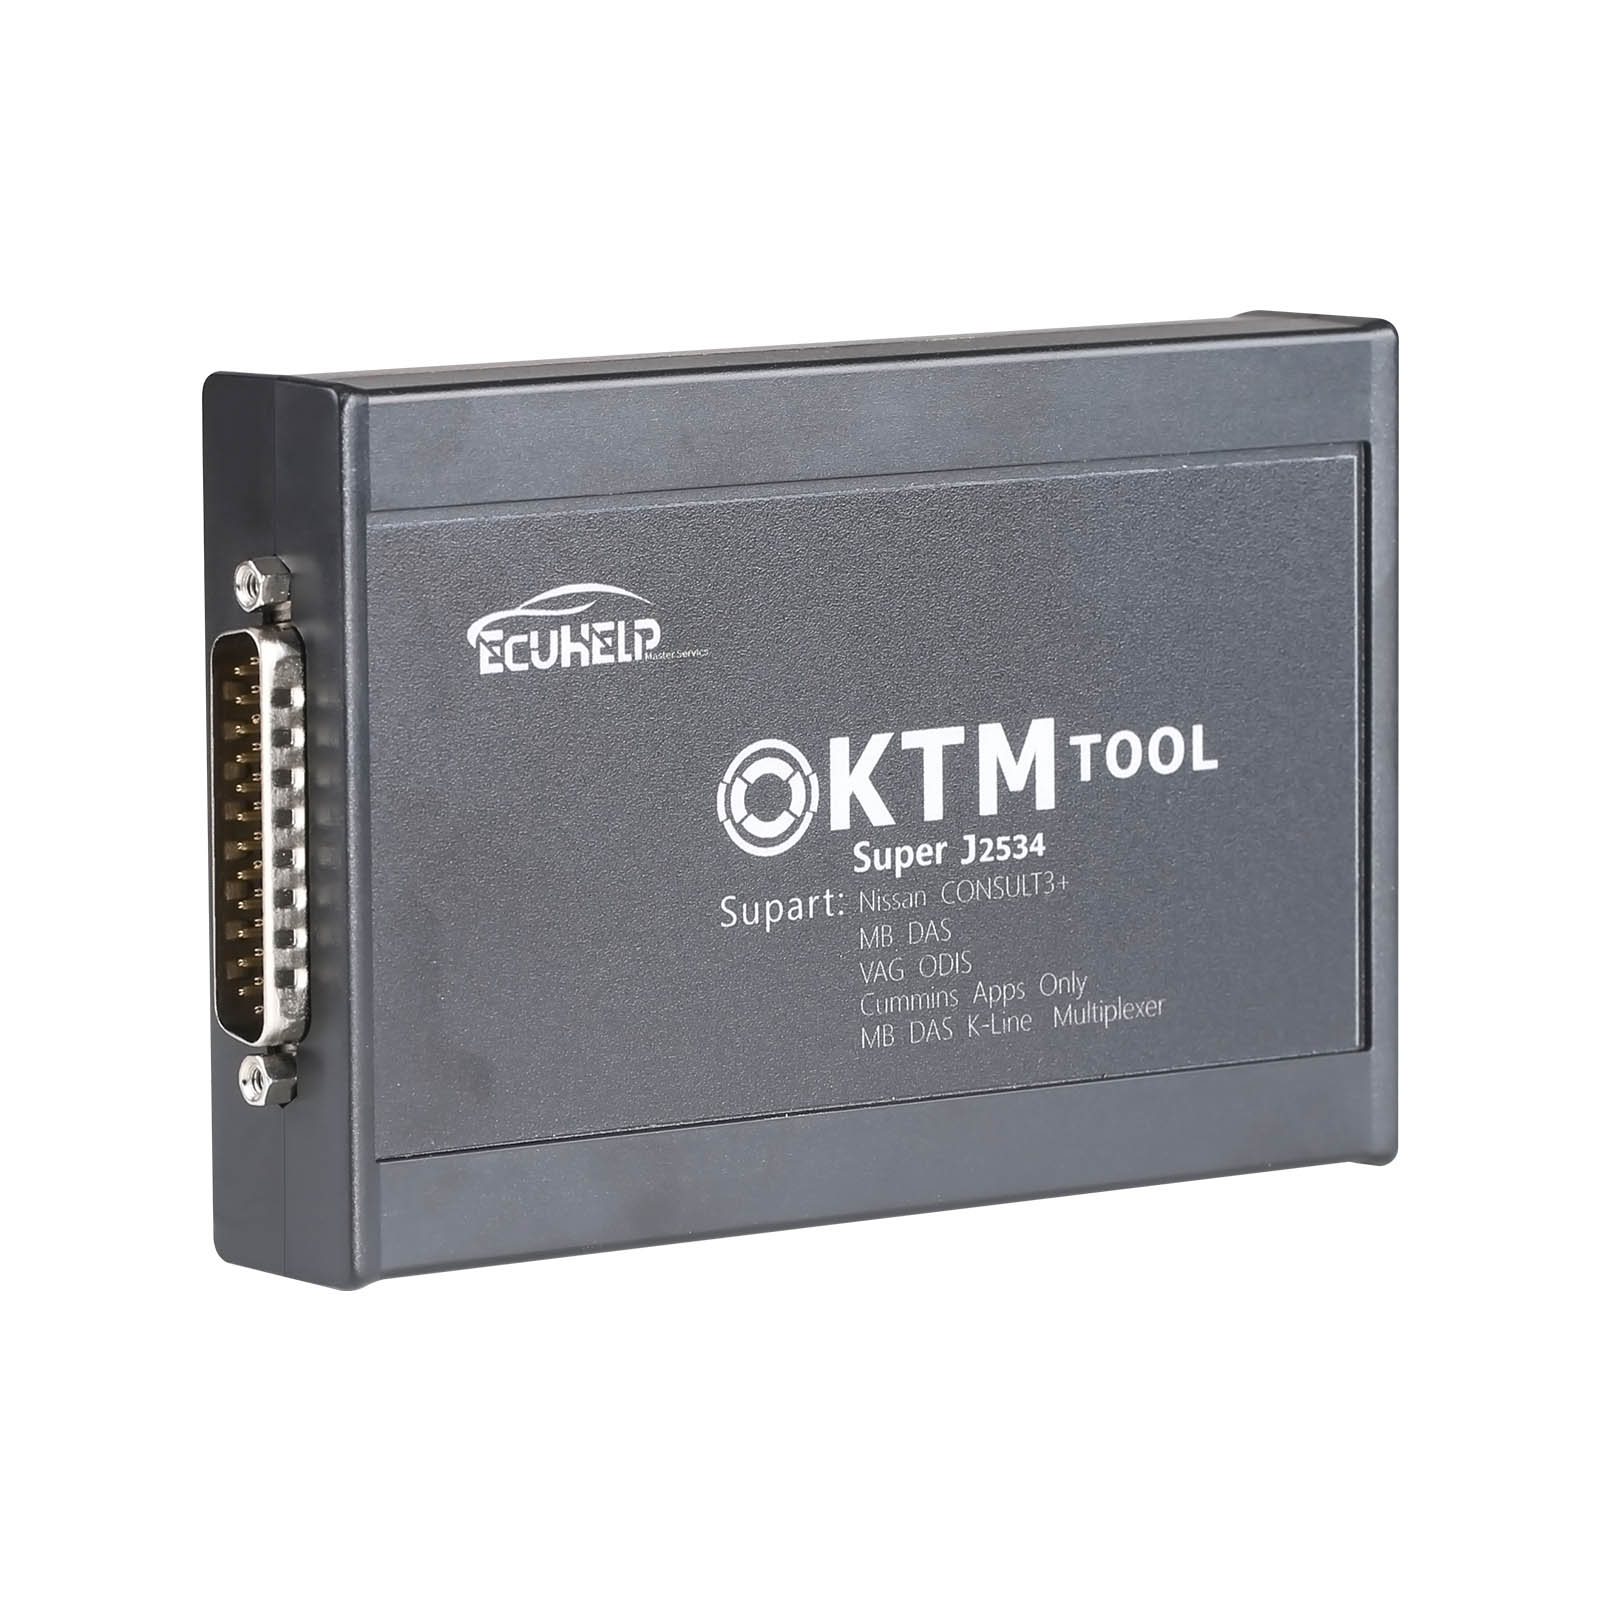 KTM200 KTM tool ECU Programmer 67 Modules in 1 V1.20 Update Version of KTM100